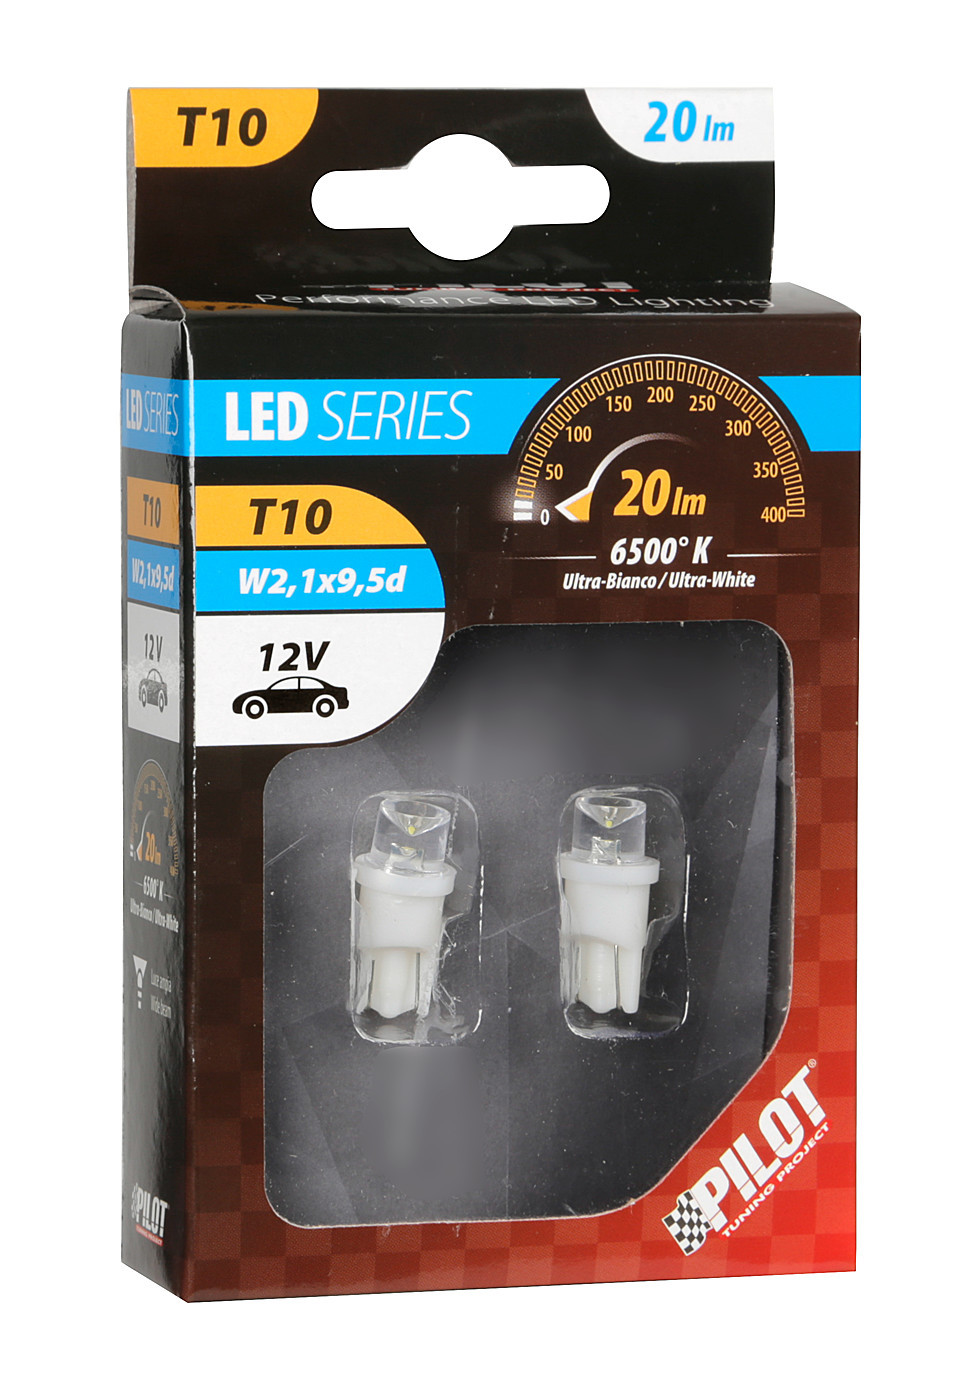 12V Colour-Led Wide, lamp 1 Led - (T10) - W2,1x9,5d - 2 pc thumb